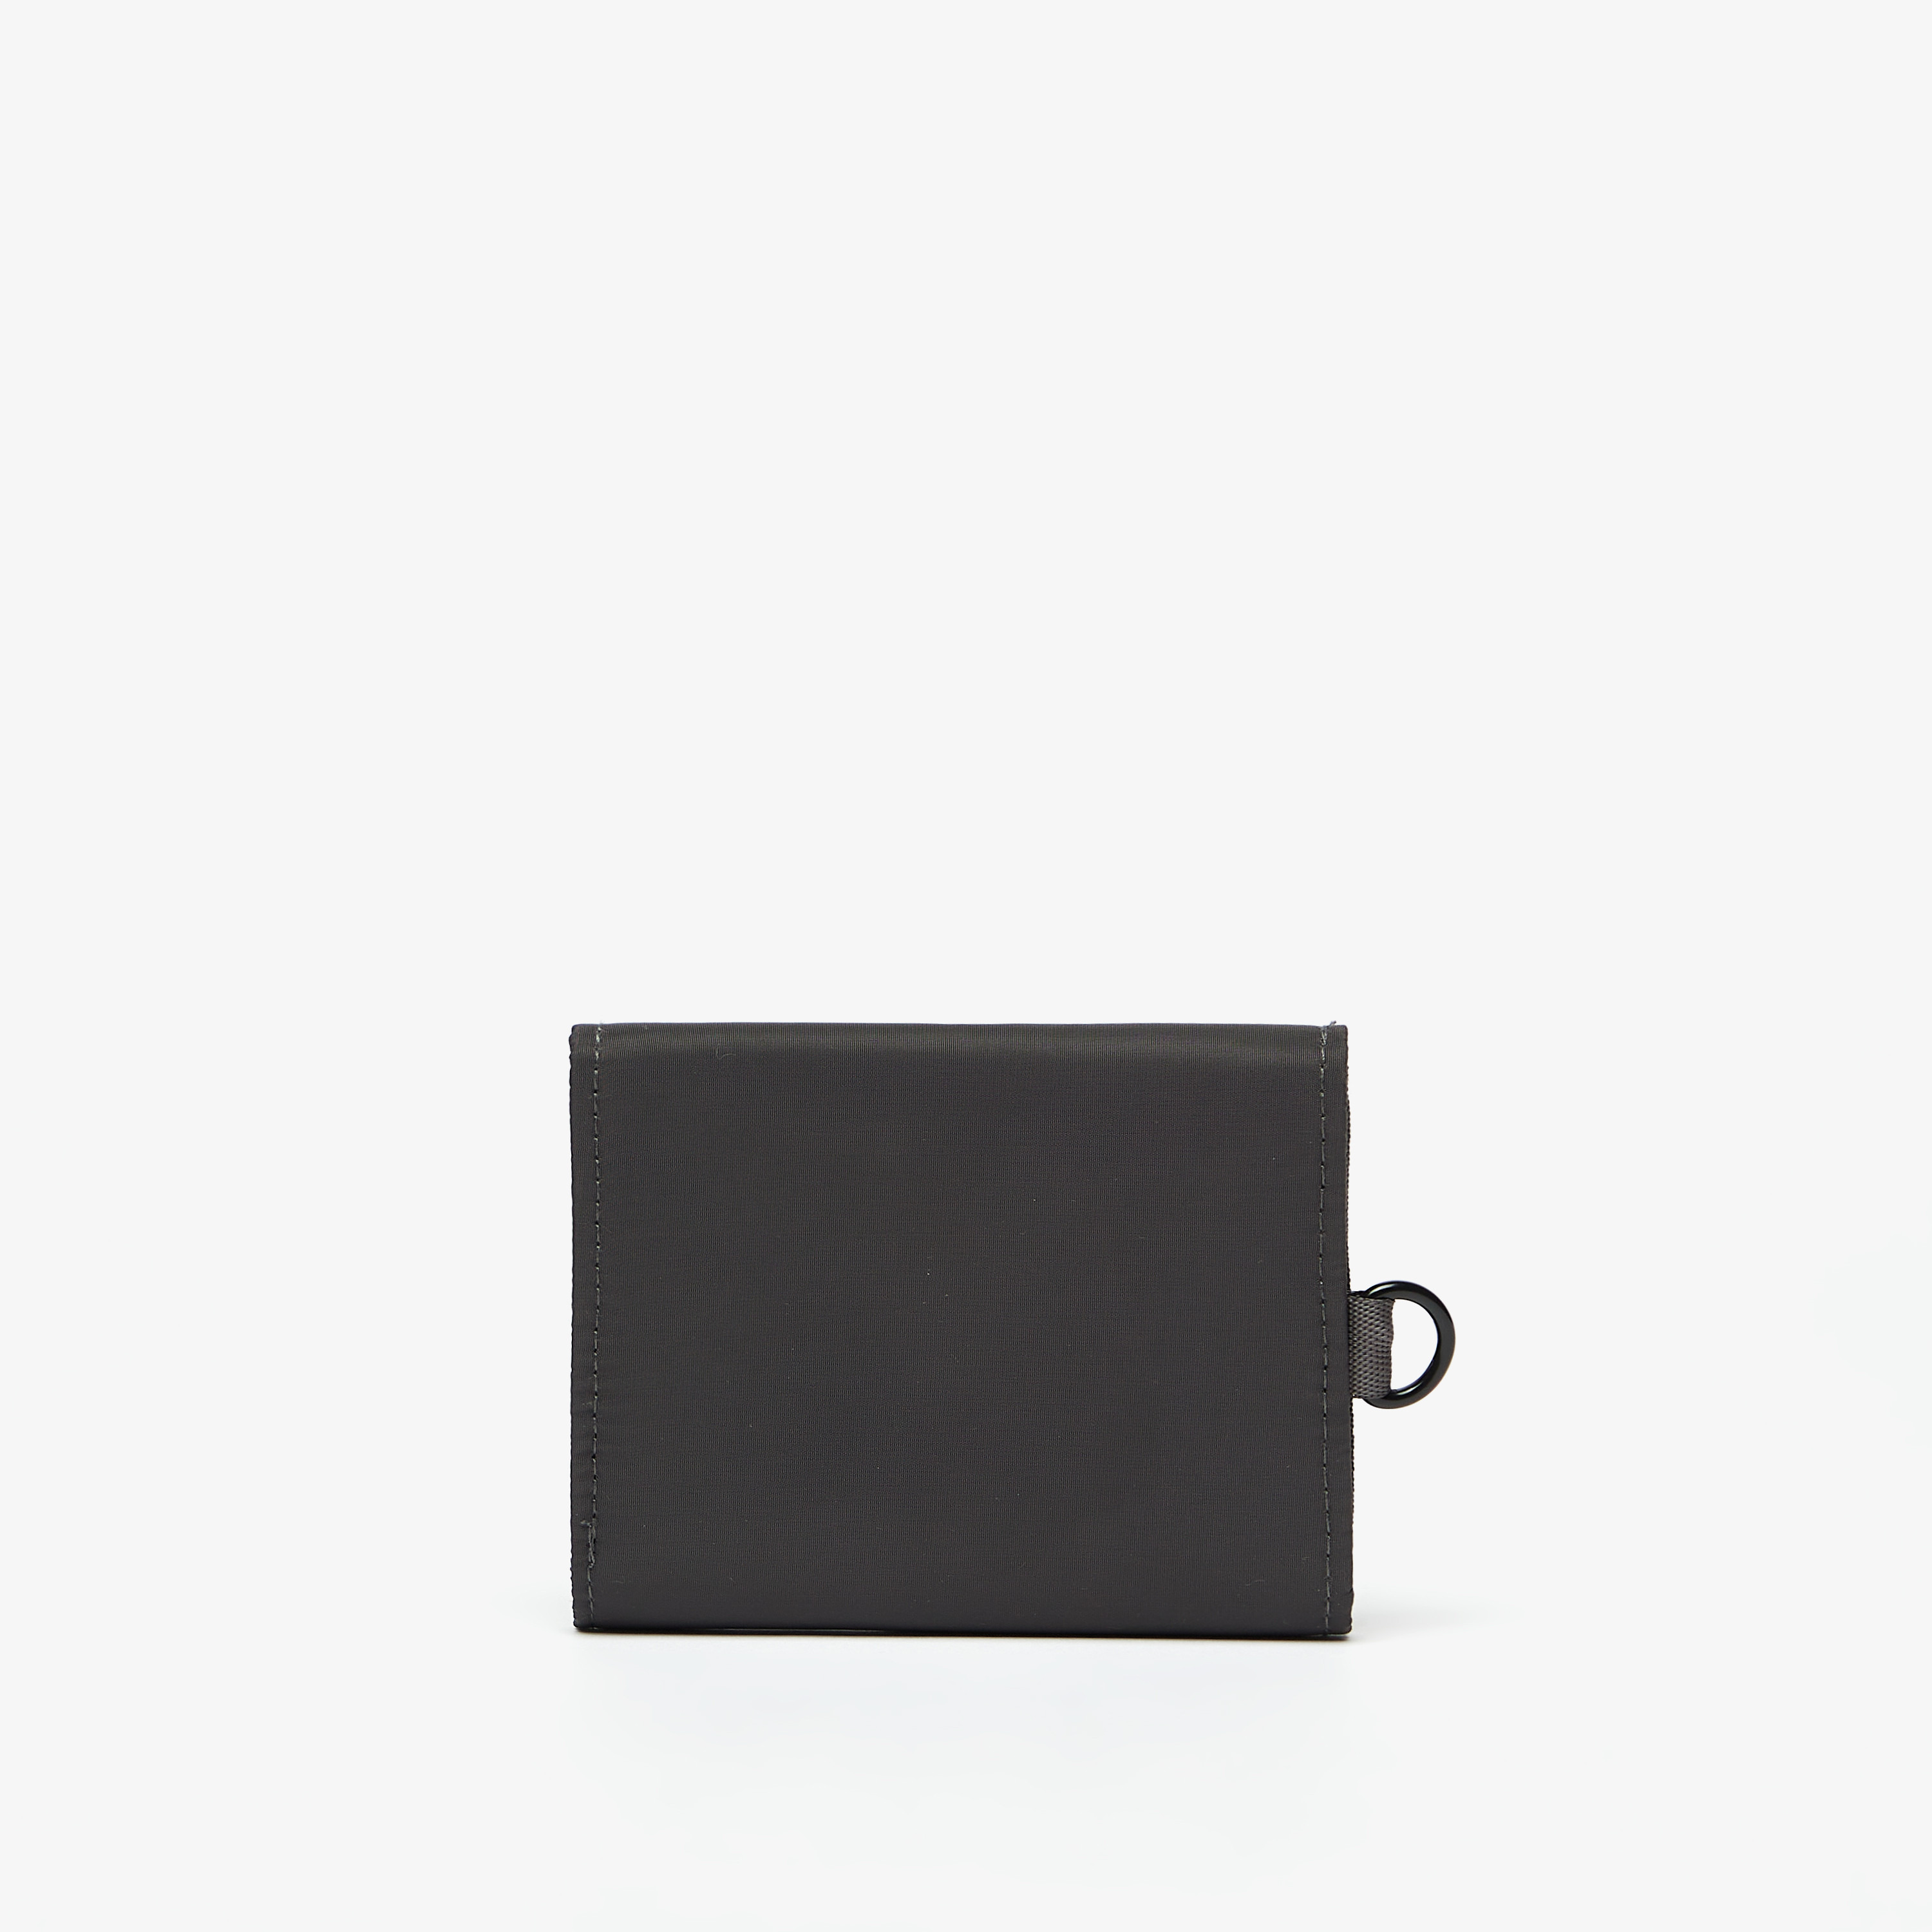 Buy Lee Cooper Printed Zip Around Leather Wallet | Splash KSA